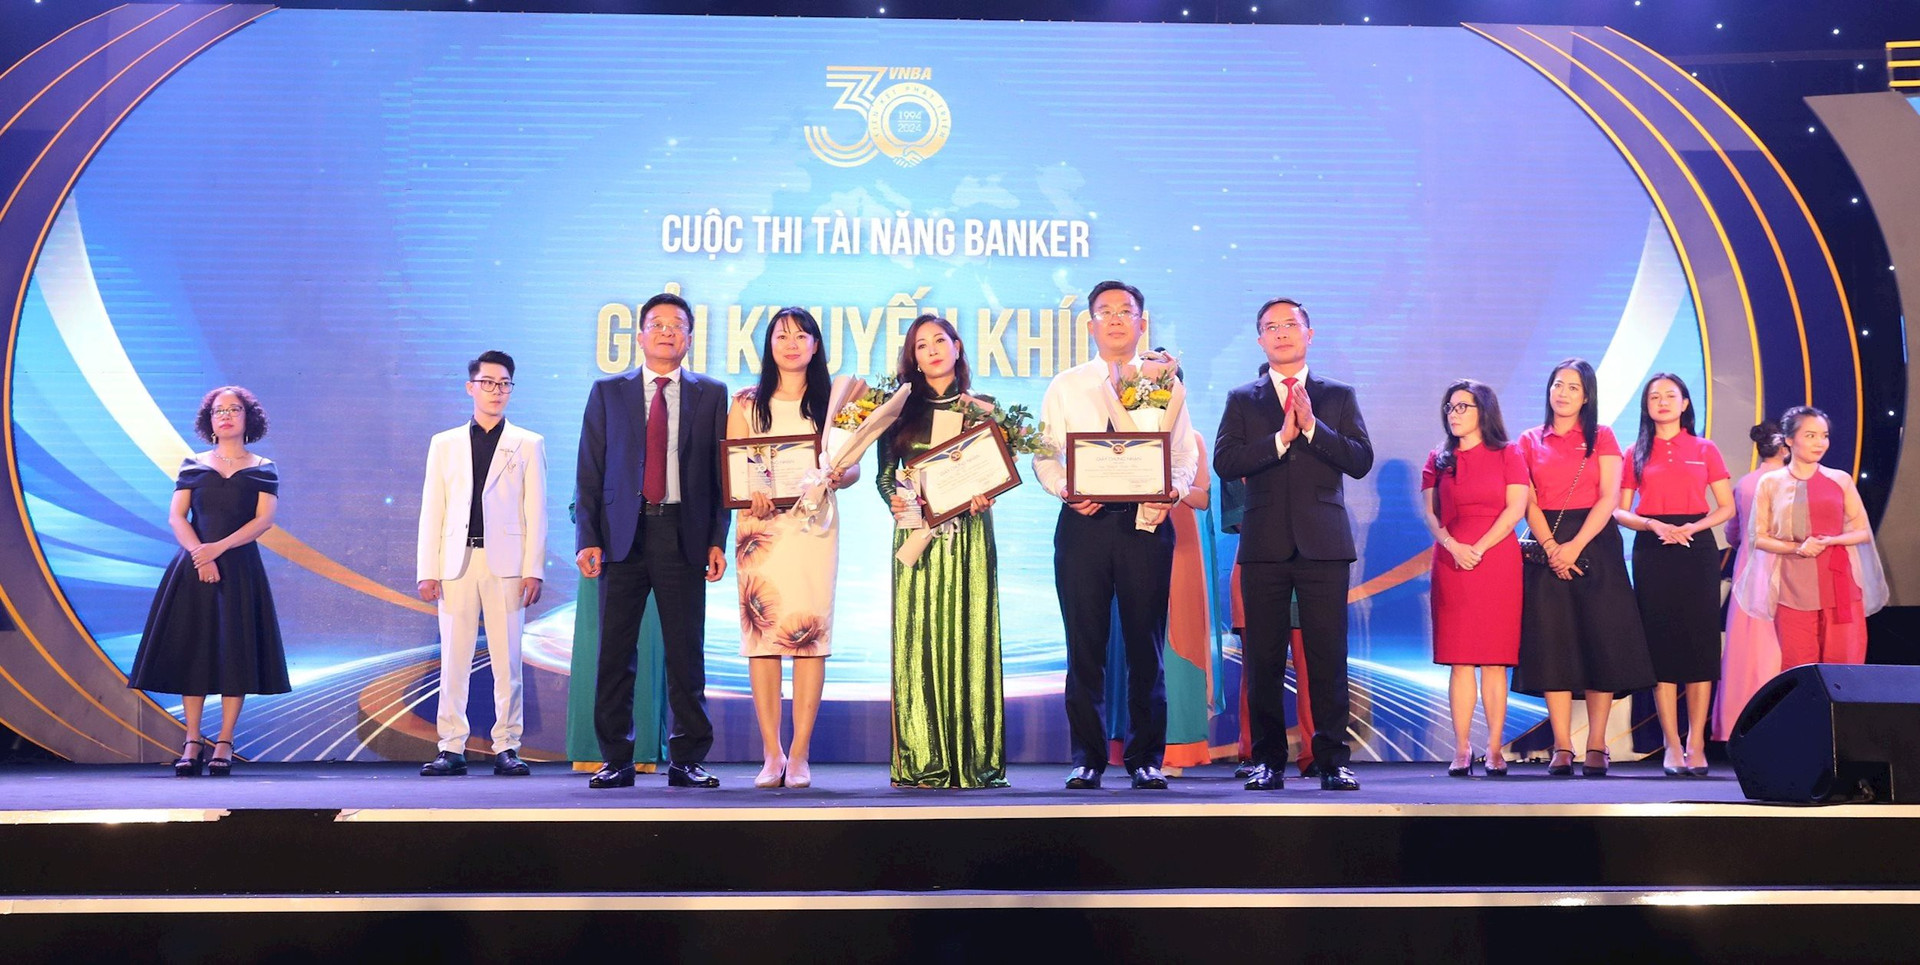 Ông Phạm Đức Ấn - Chủ tịch HHNH và ông Nguyễn Quốc Hùng, Trưởng BTC trao giải cho các thí sinh đạt giải Khuyến khích Cuộc thi Tài năng Banker.